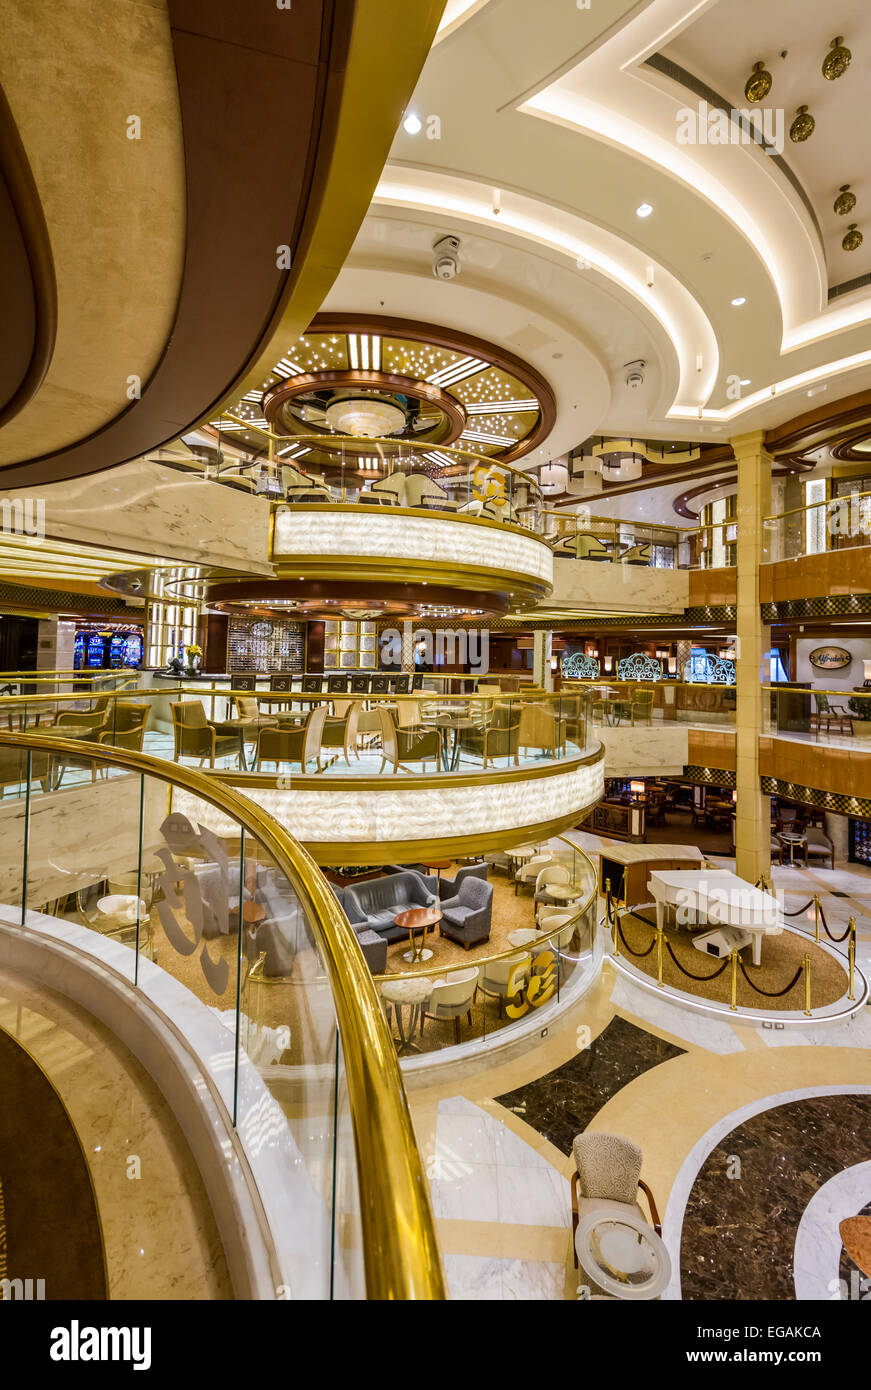 Inneneinrichtung im Atrium des Luxus-Kreuzfahrt Schiff Regal Princess  Stockfotografie - Alamy